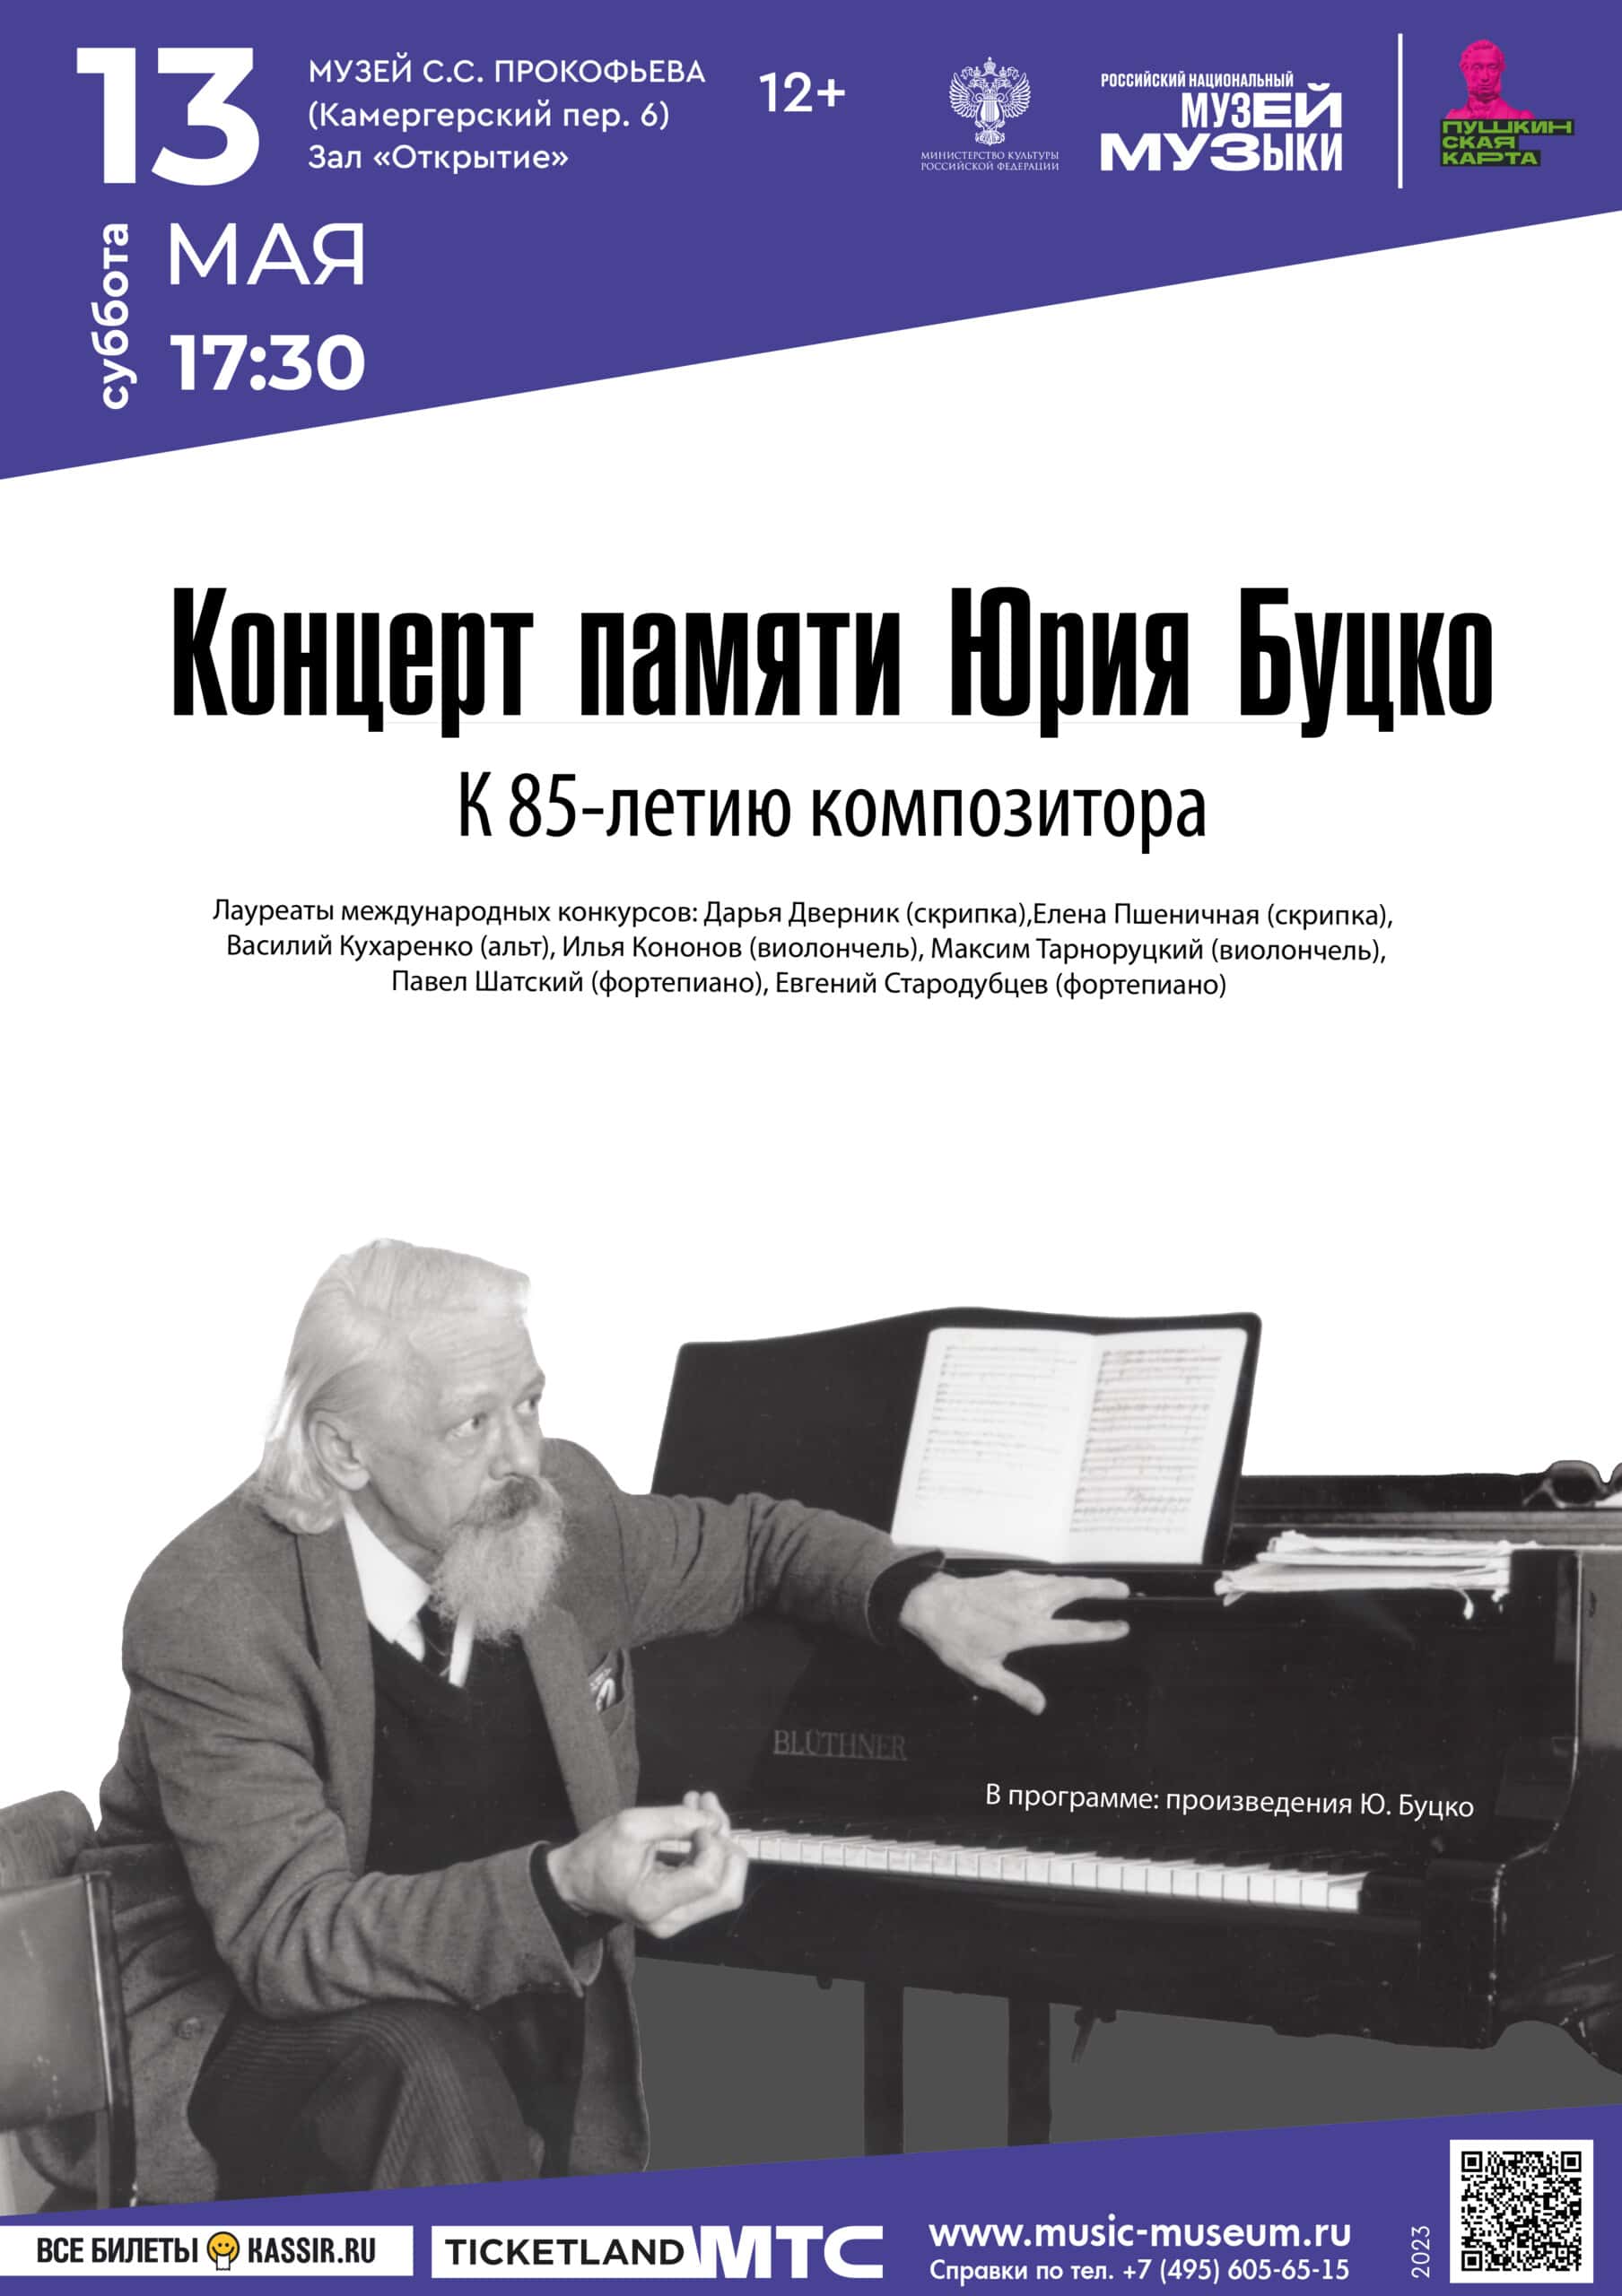 موسیقی یوری بوتسکو در موزه سرگئی پروکوفیف اجرا خواهد شد